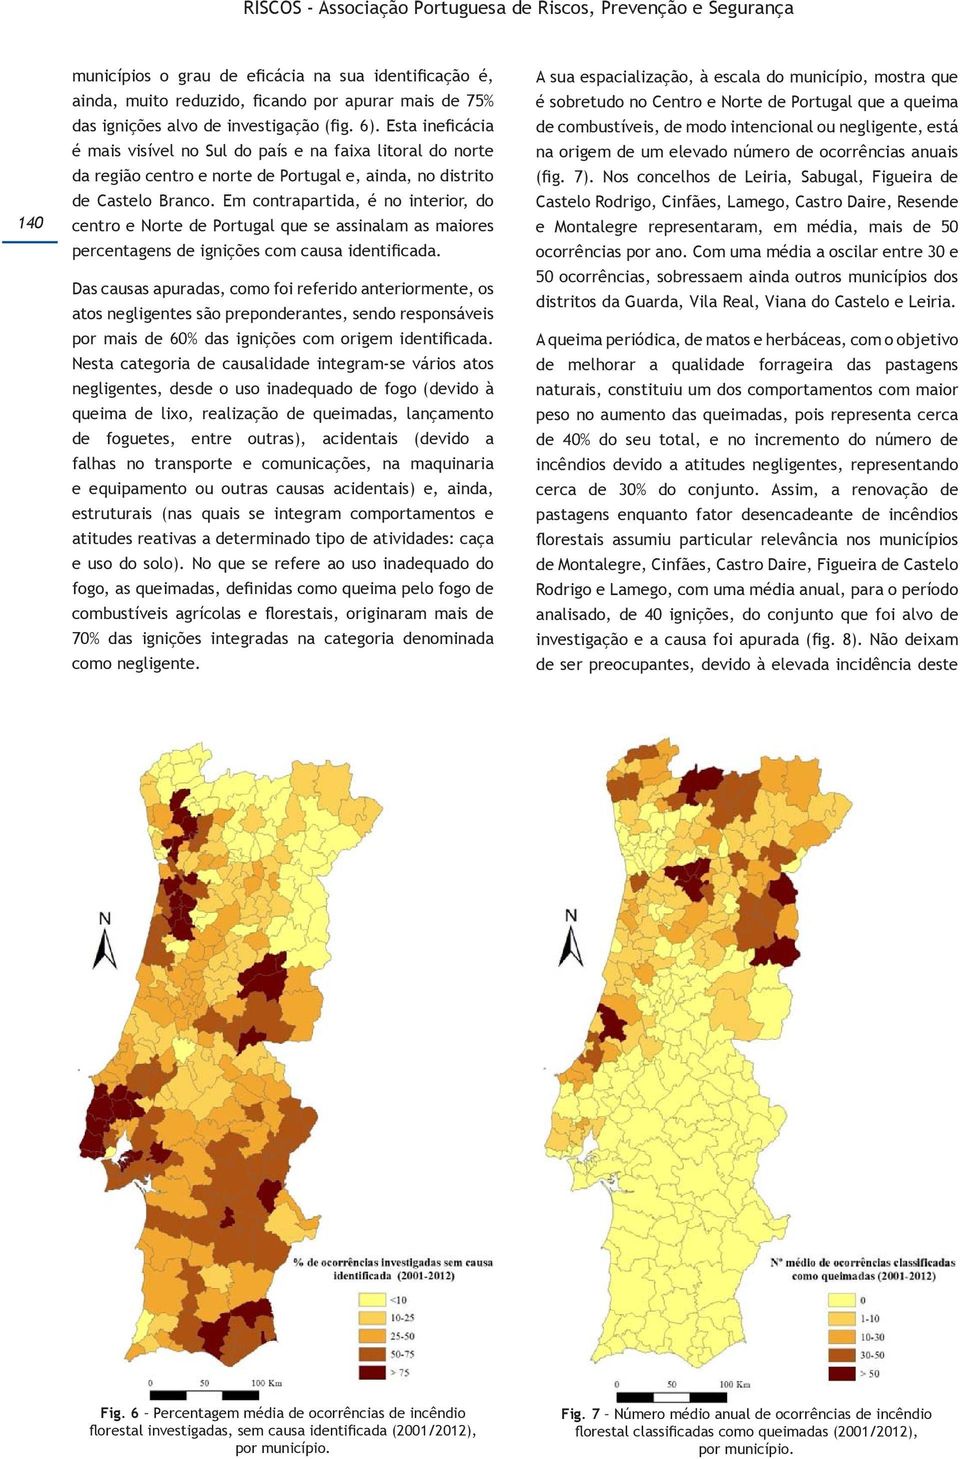 Em contrapartida, é no interior, do centro e Norte de Portugal que se assinalam as maiores percentagens de ignições com causa identificada.